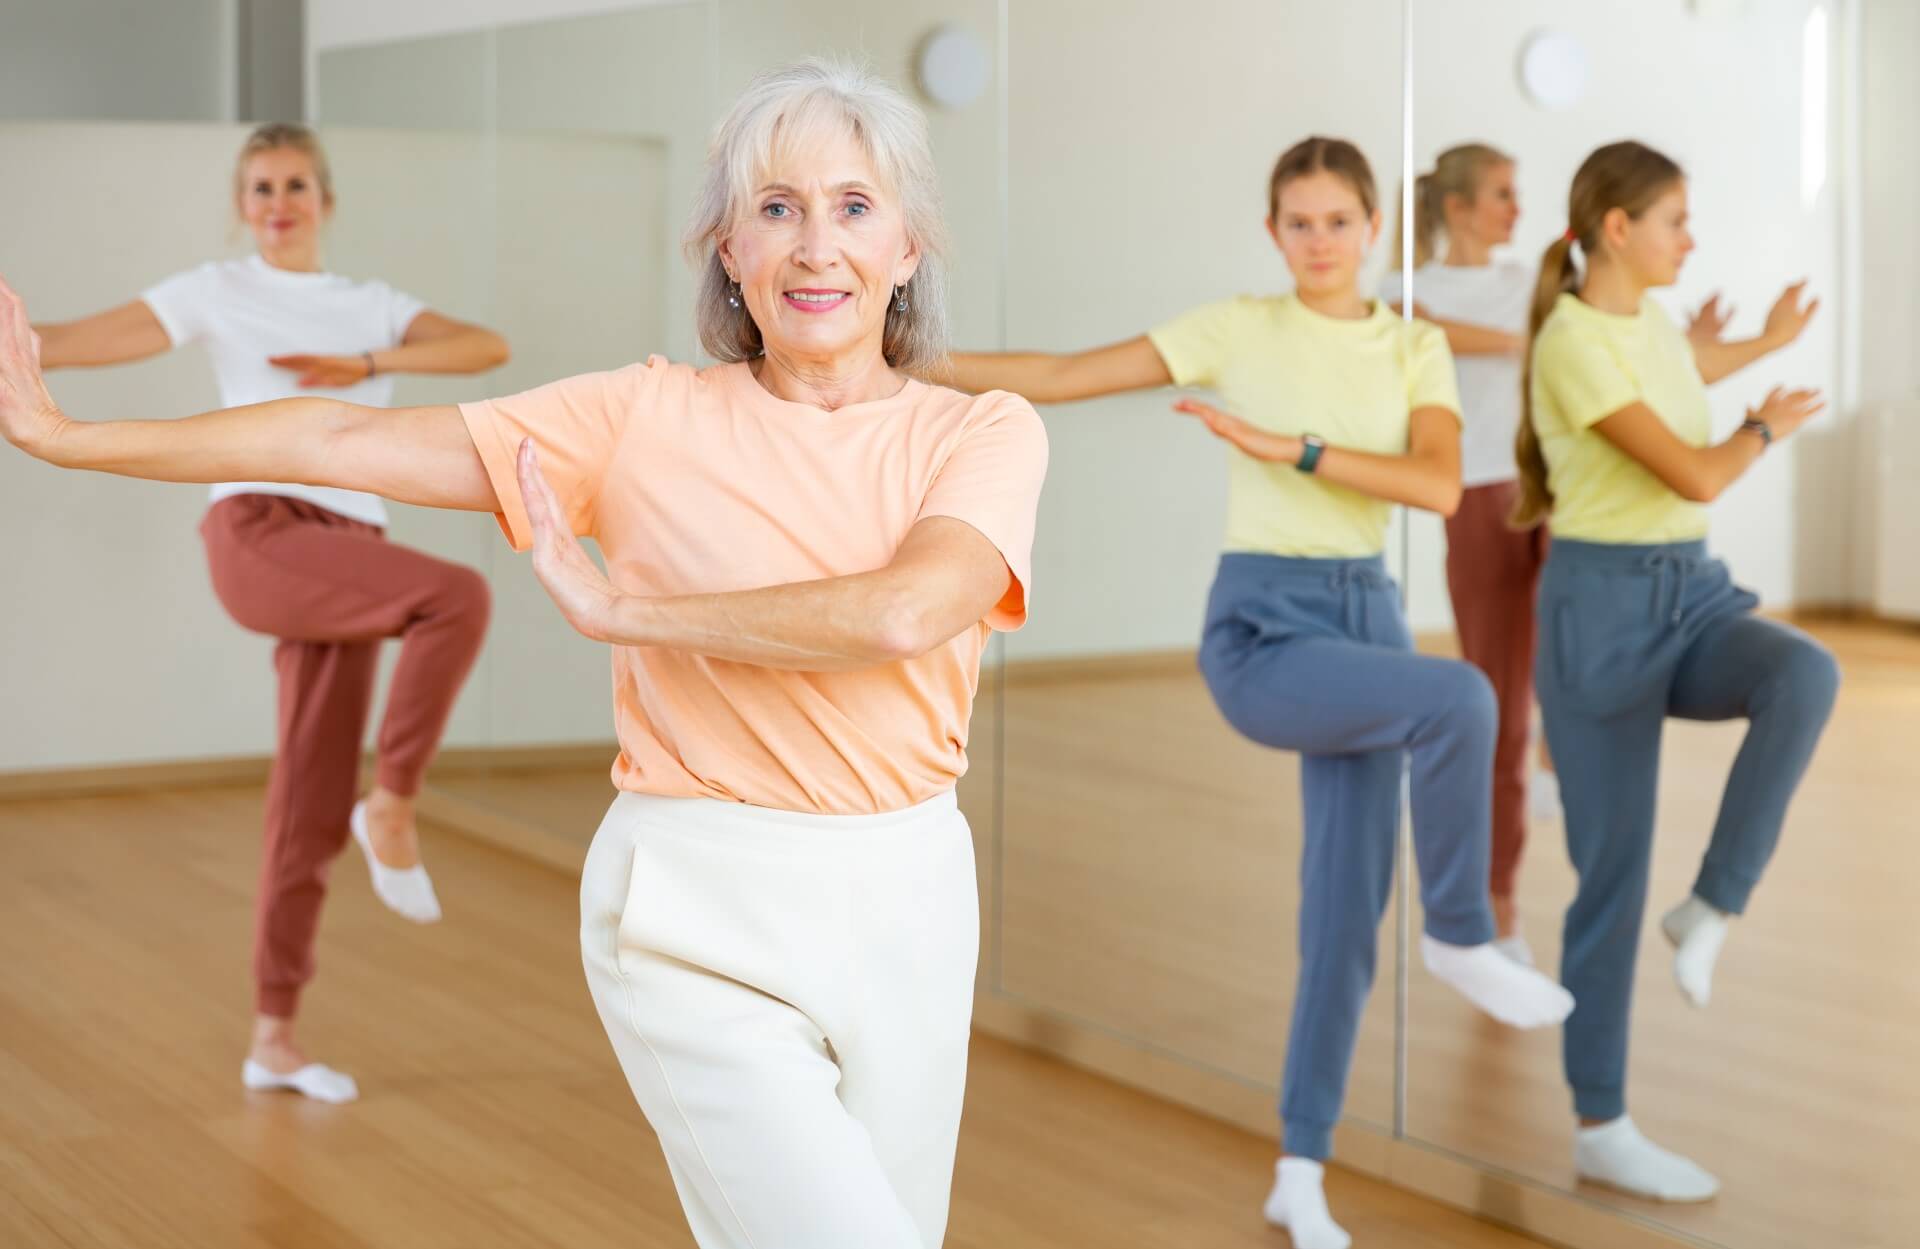 Aula de dança: descubra os principais benefícios e as melhores